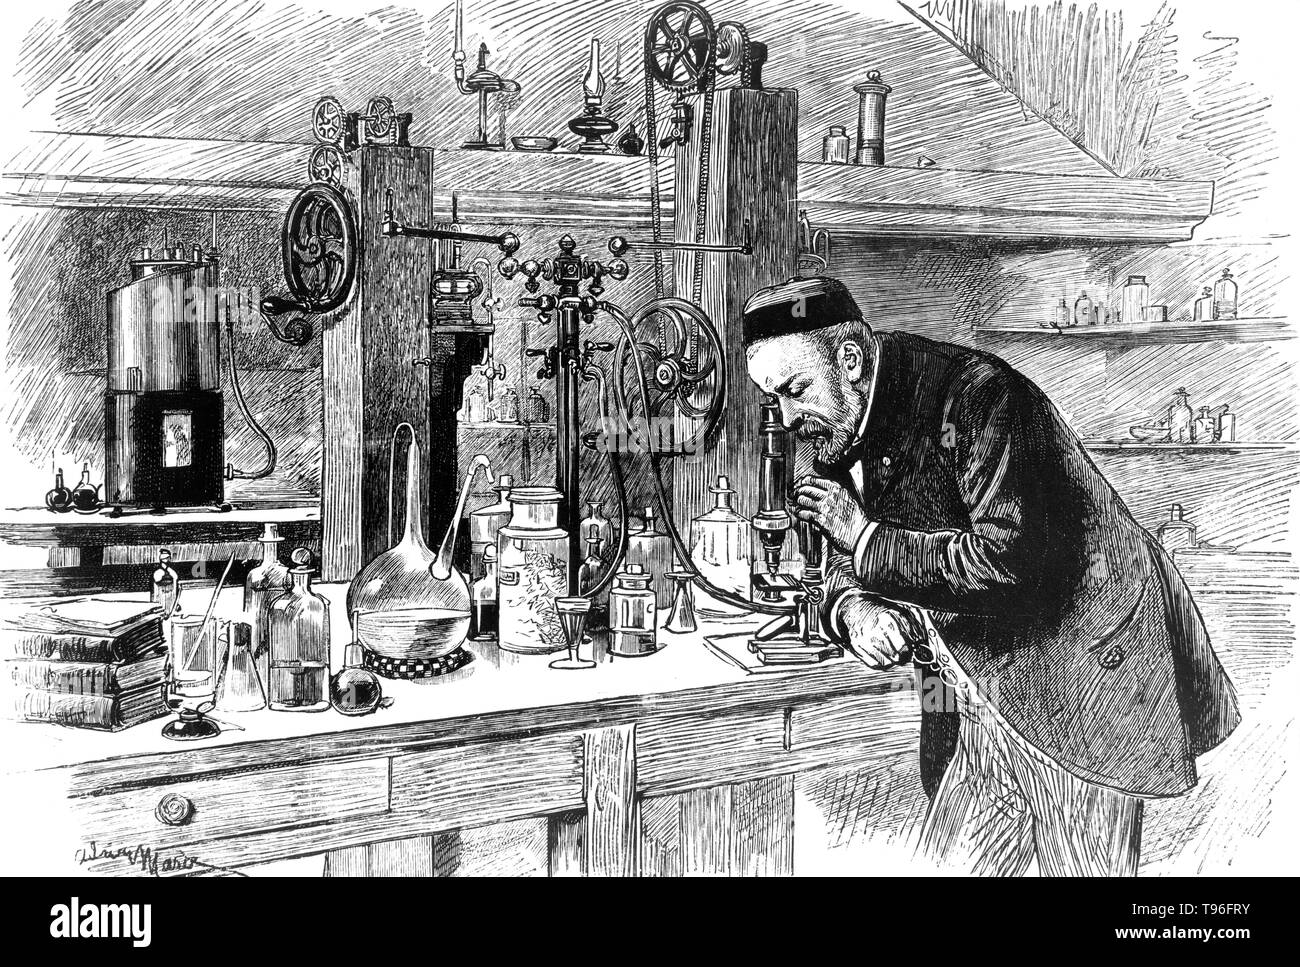 Louis Pasteur dans son laboratoire. Pasteur (1822 - 1895) était un chimiste français, et qui a fondé le bactériologiste La science de la microbiologie. Pasteur découvrit que la maladie peut être causée par une bactérie transmise de personne à personne (la théorie des germes de maladies). Il a également mis au point des vaccins contre la rage et la maladie du charbon.. En 1887, il fonde l'Institut Pasteur. Lettrage : signature indistincte de l'artiste en bas à gauche de l'imprimer, le 21 novembre 1885. Banque D'Images